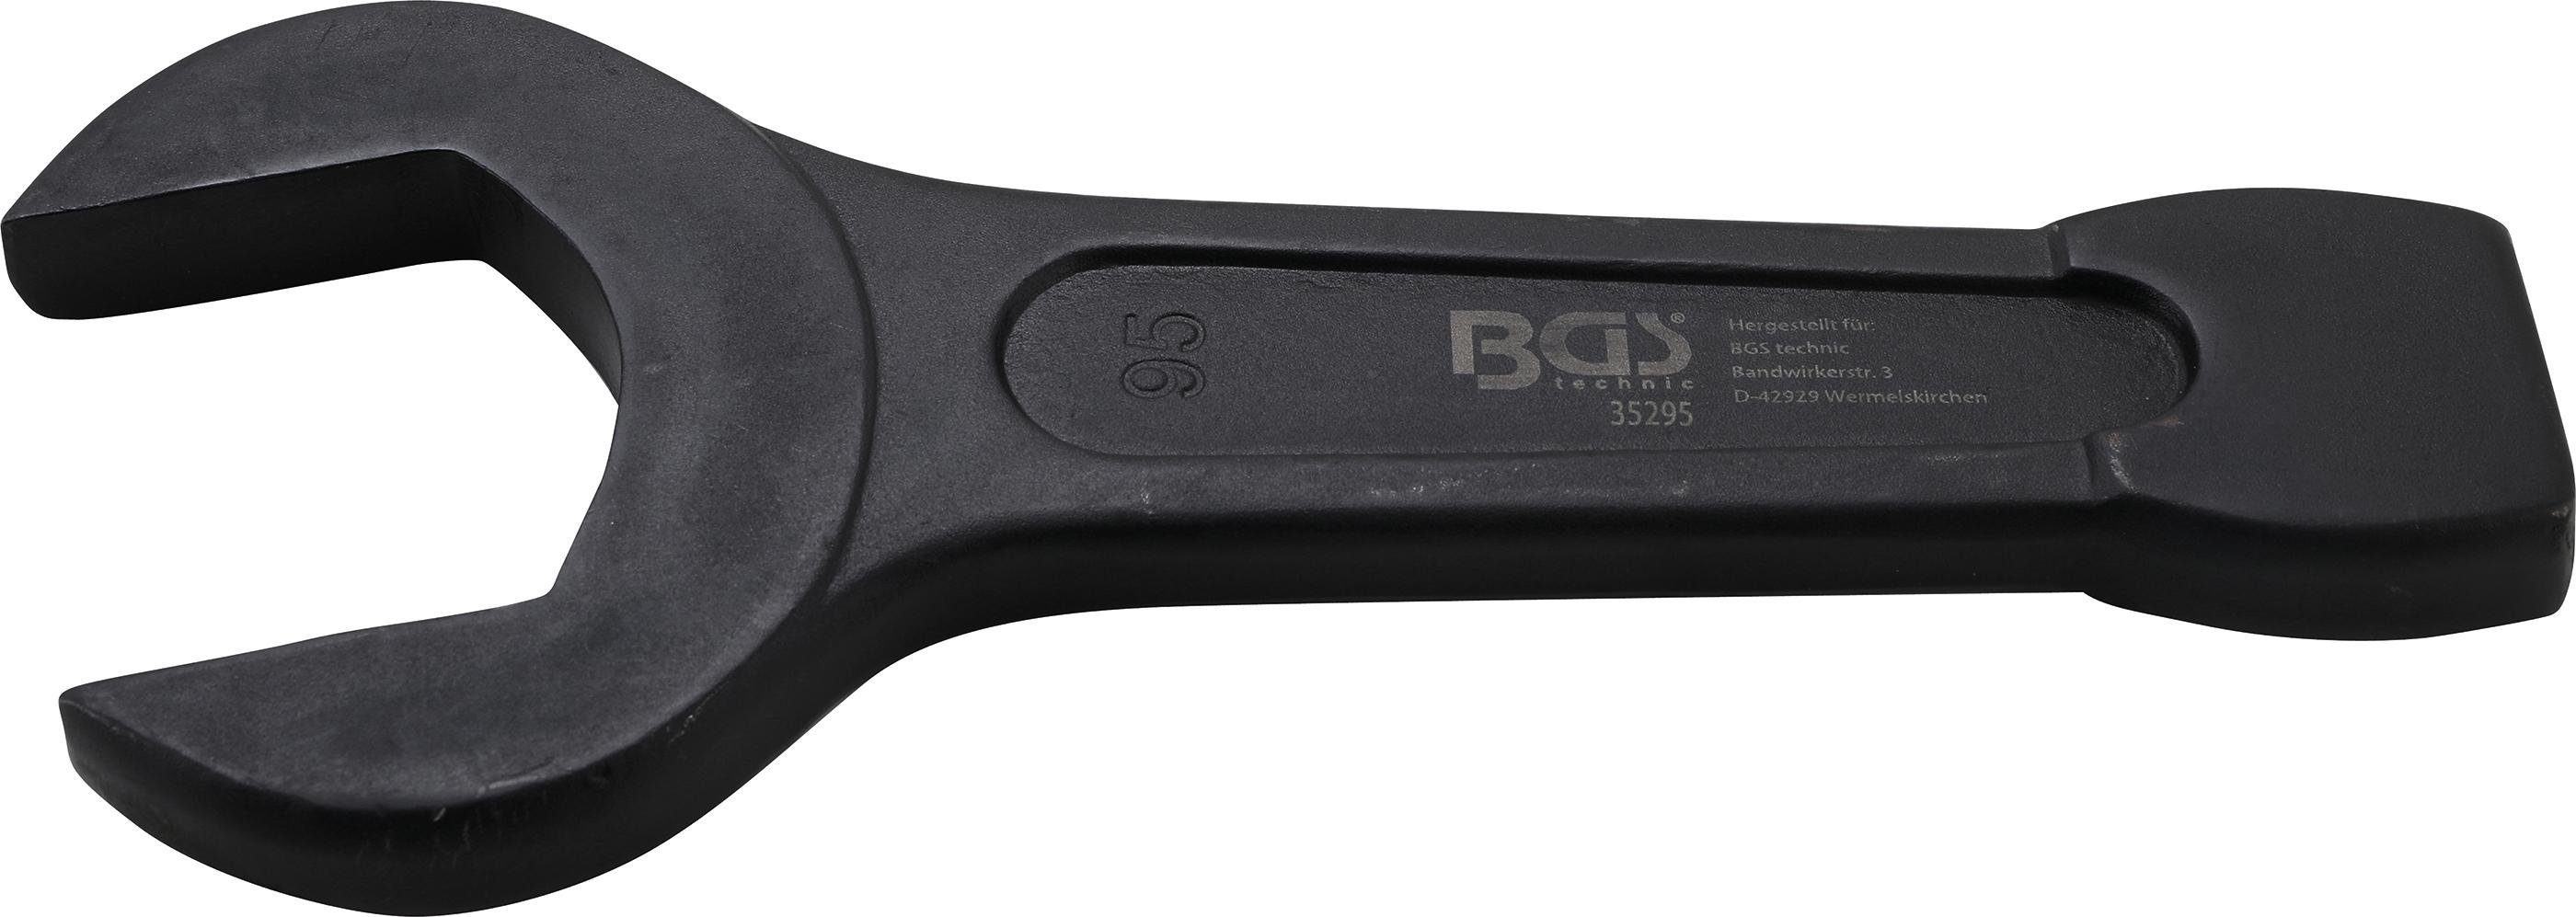 BGS technic Maulschlüssel Schlag-Maulschlüssel, SW 95 mm